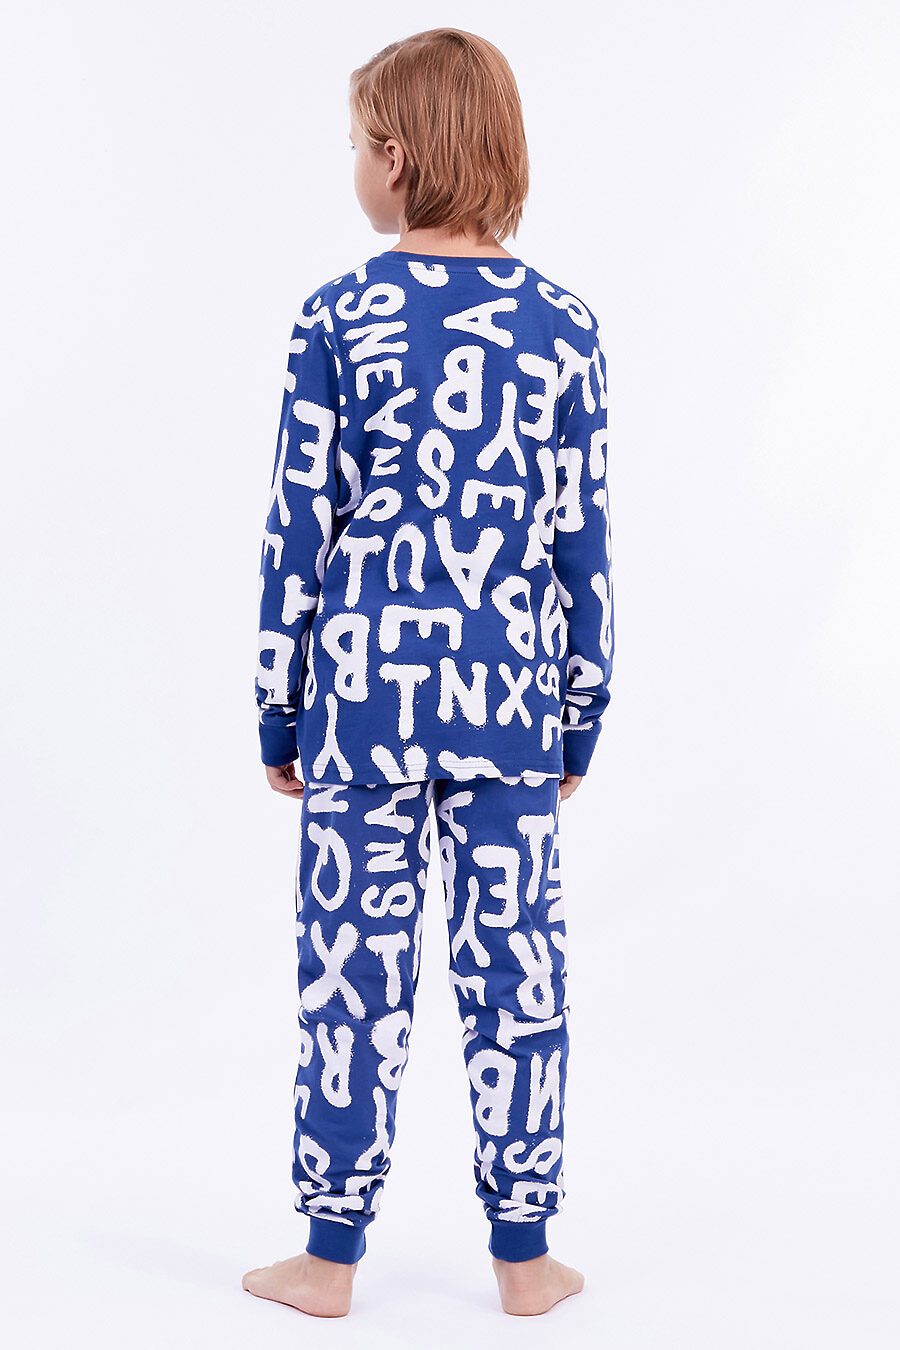 Пижама для мальчиков ELEMENTARNO 742823 купить оптом от производителя. Совместная покупка детской одежды в OptMoyo